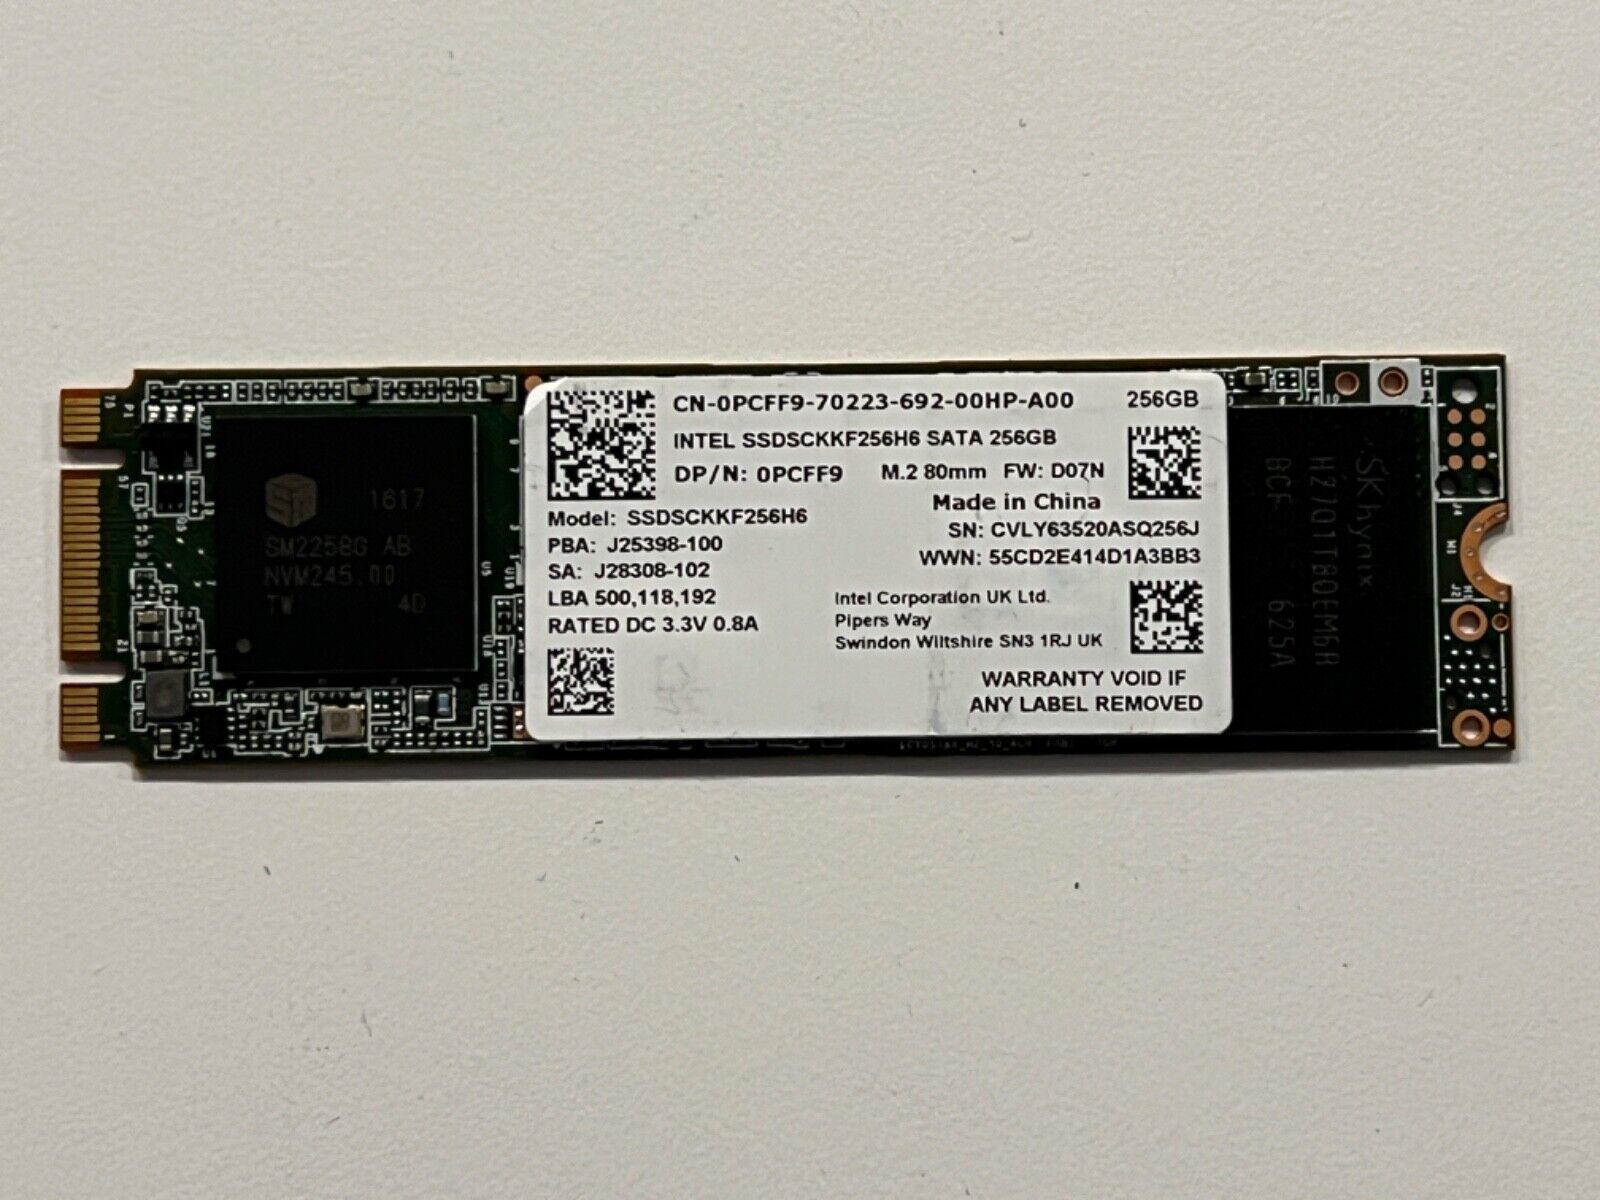 Intel SATA 256GB SSD M.2 80mm SSDSCKKF256H6